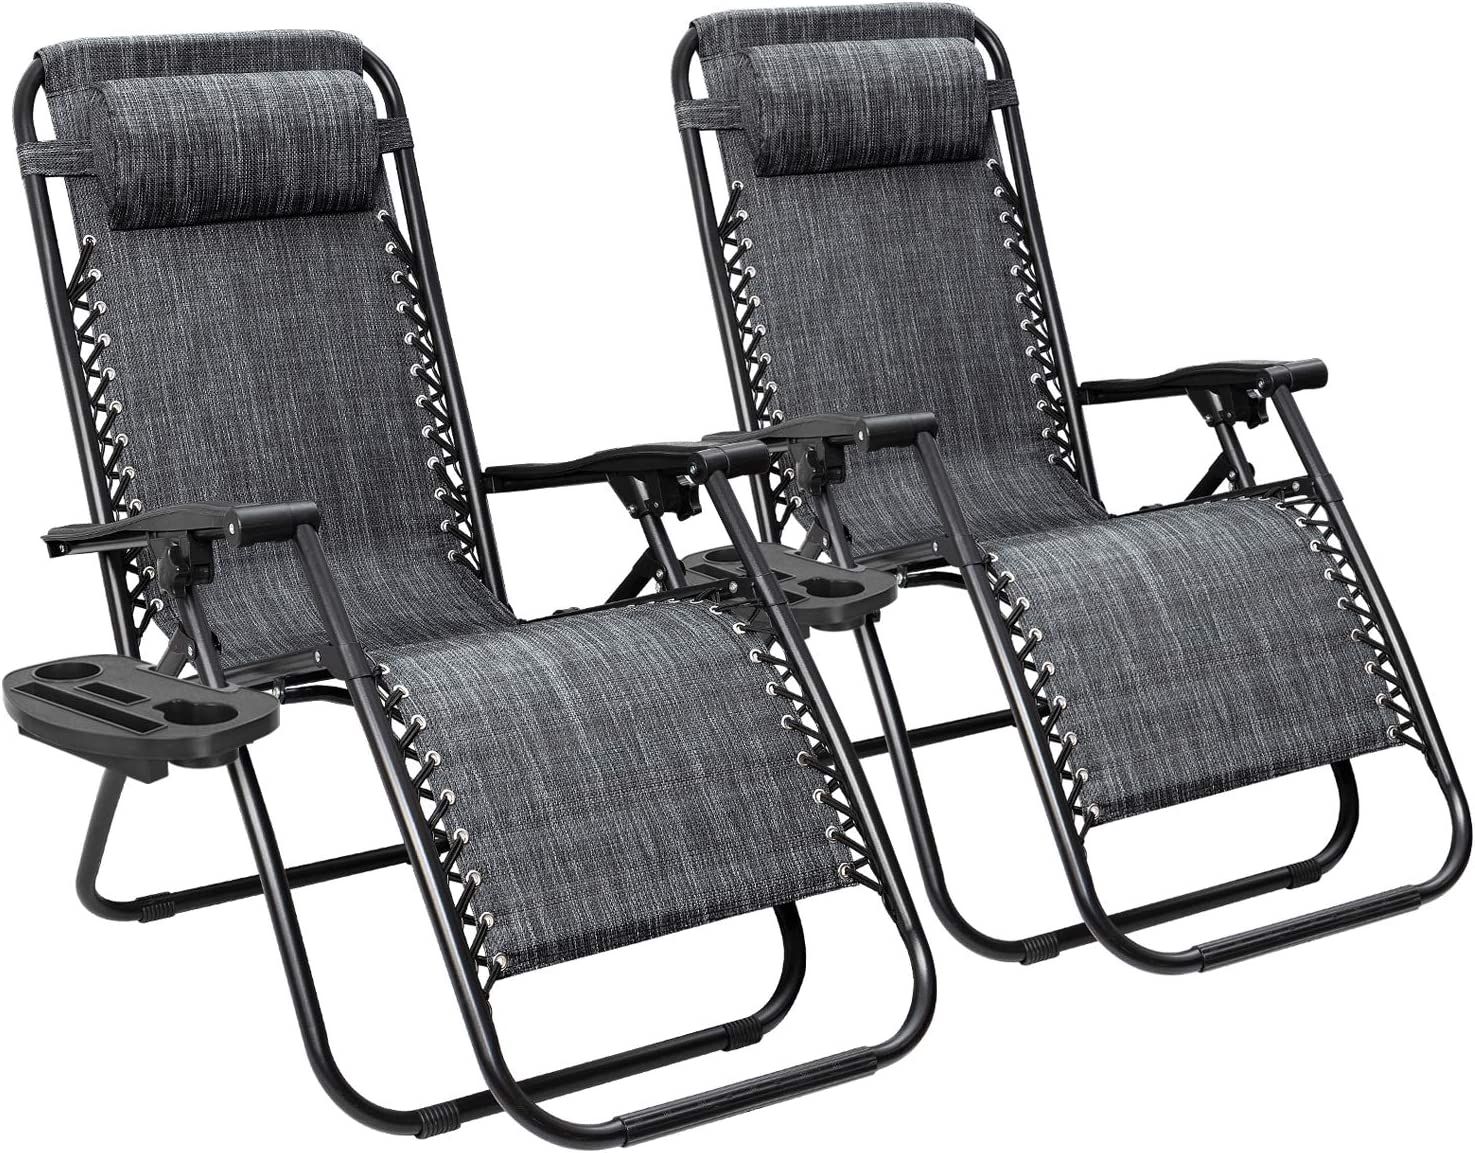 Flamaker Ergonomic Locking Zero Gravity Chairs, 2-Piece